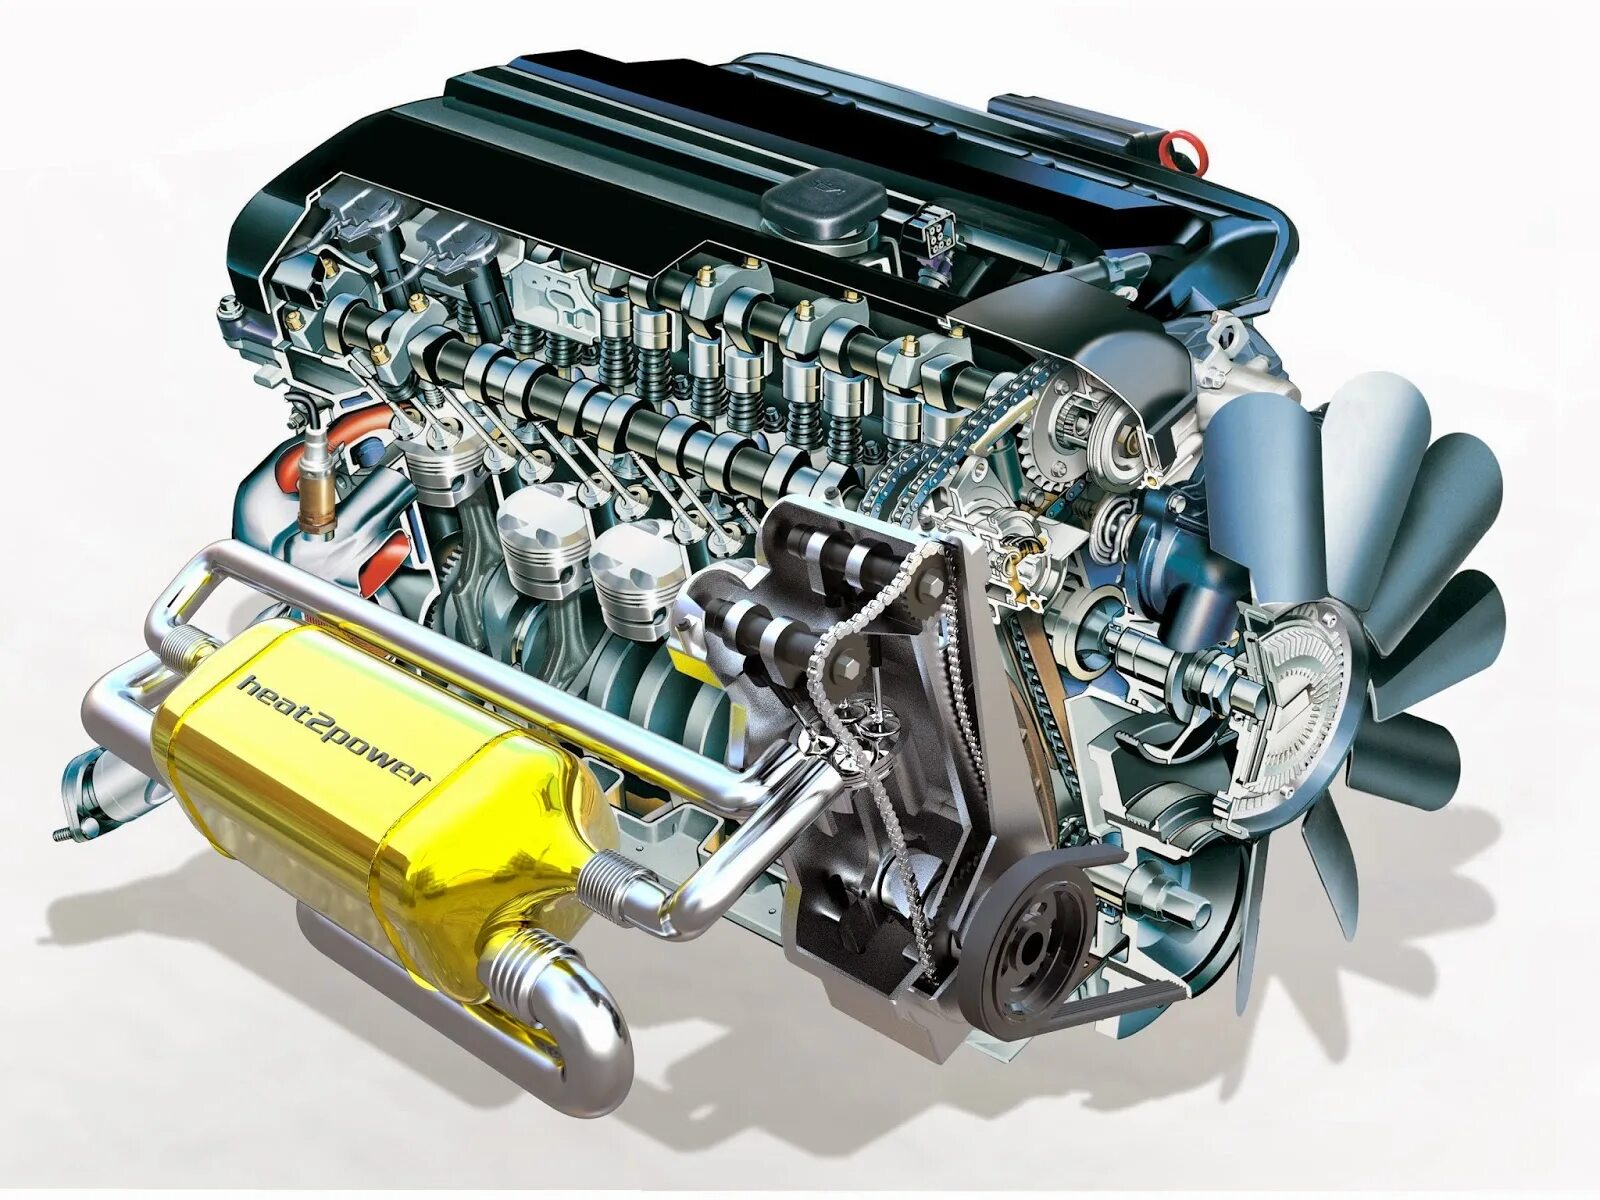 Автомобиль тепловой двигатель. Тепловой двигатель. Teplowoz dwigatel. Двигатель внутреннего сгорания. Тепловые двигатели в автомобилях.